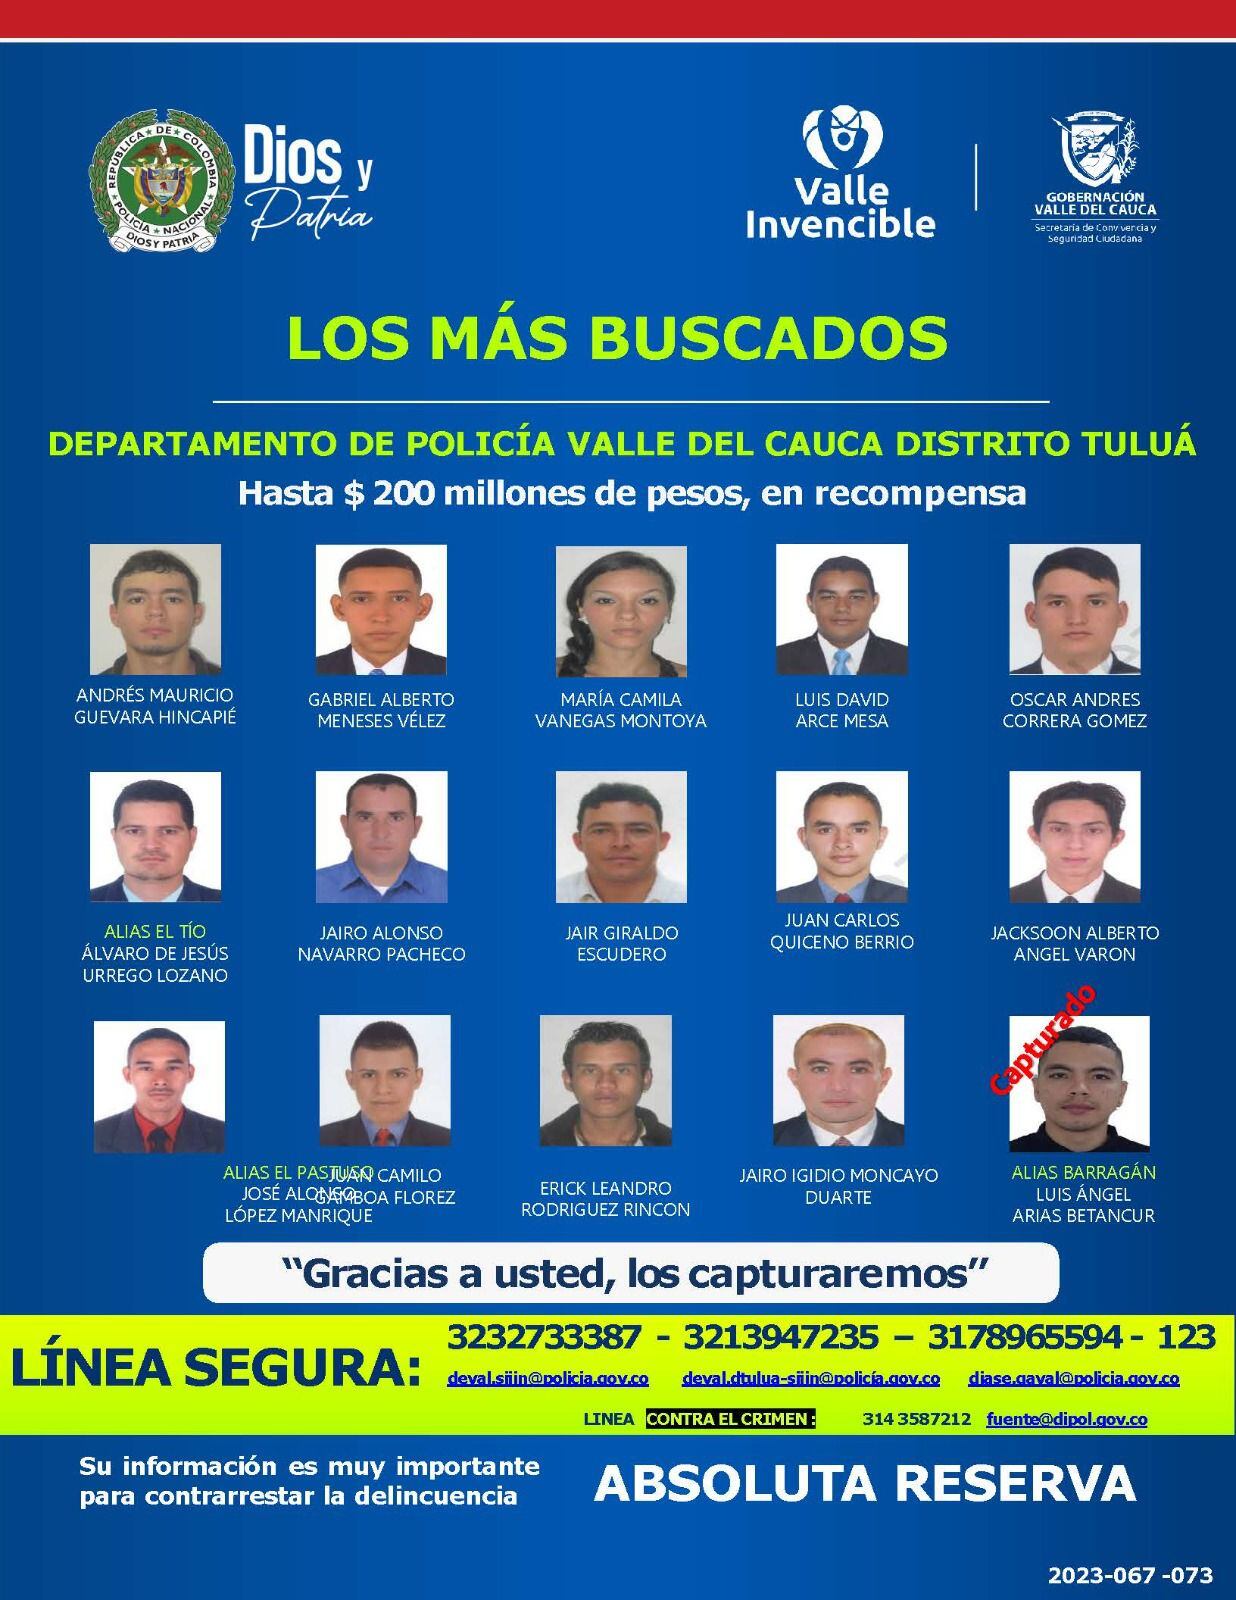 Estos son los más buscados del municipio de Tuluá, por los delitos de homicidio, extorsión y hurto, entre otros. Imagen Policía Valle del Cauca.